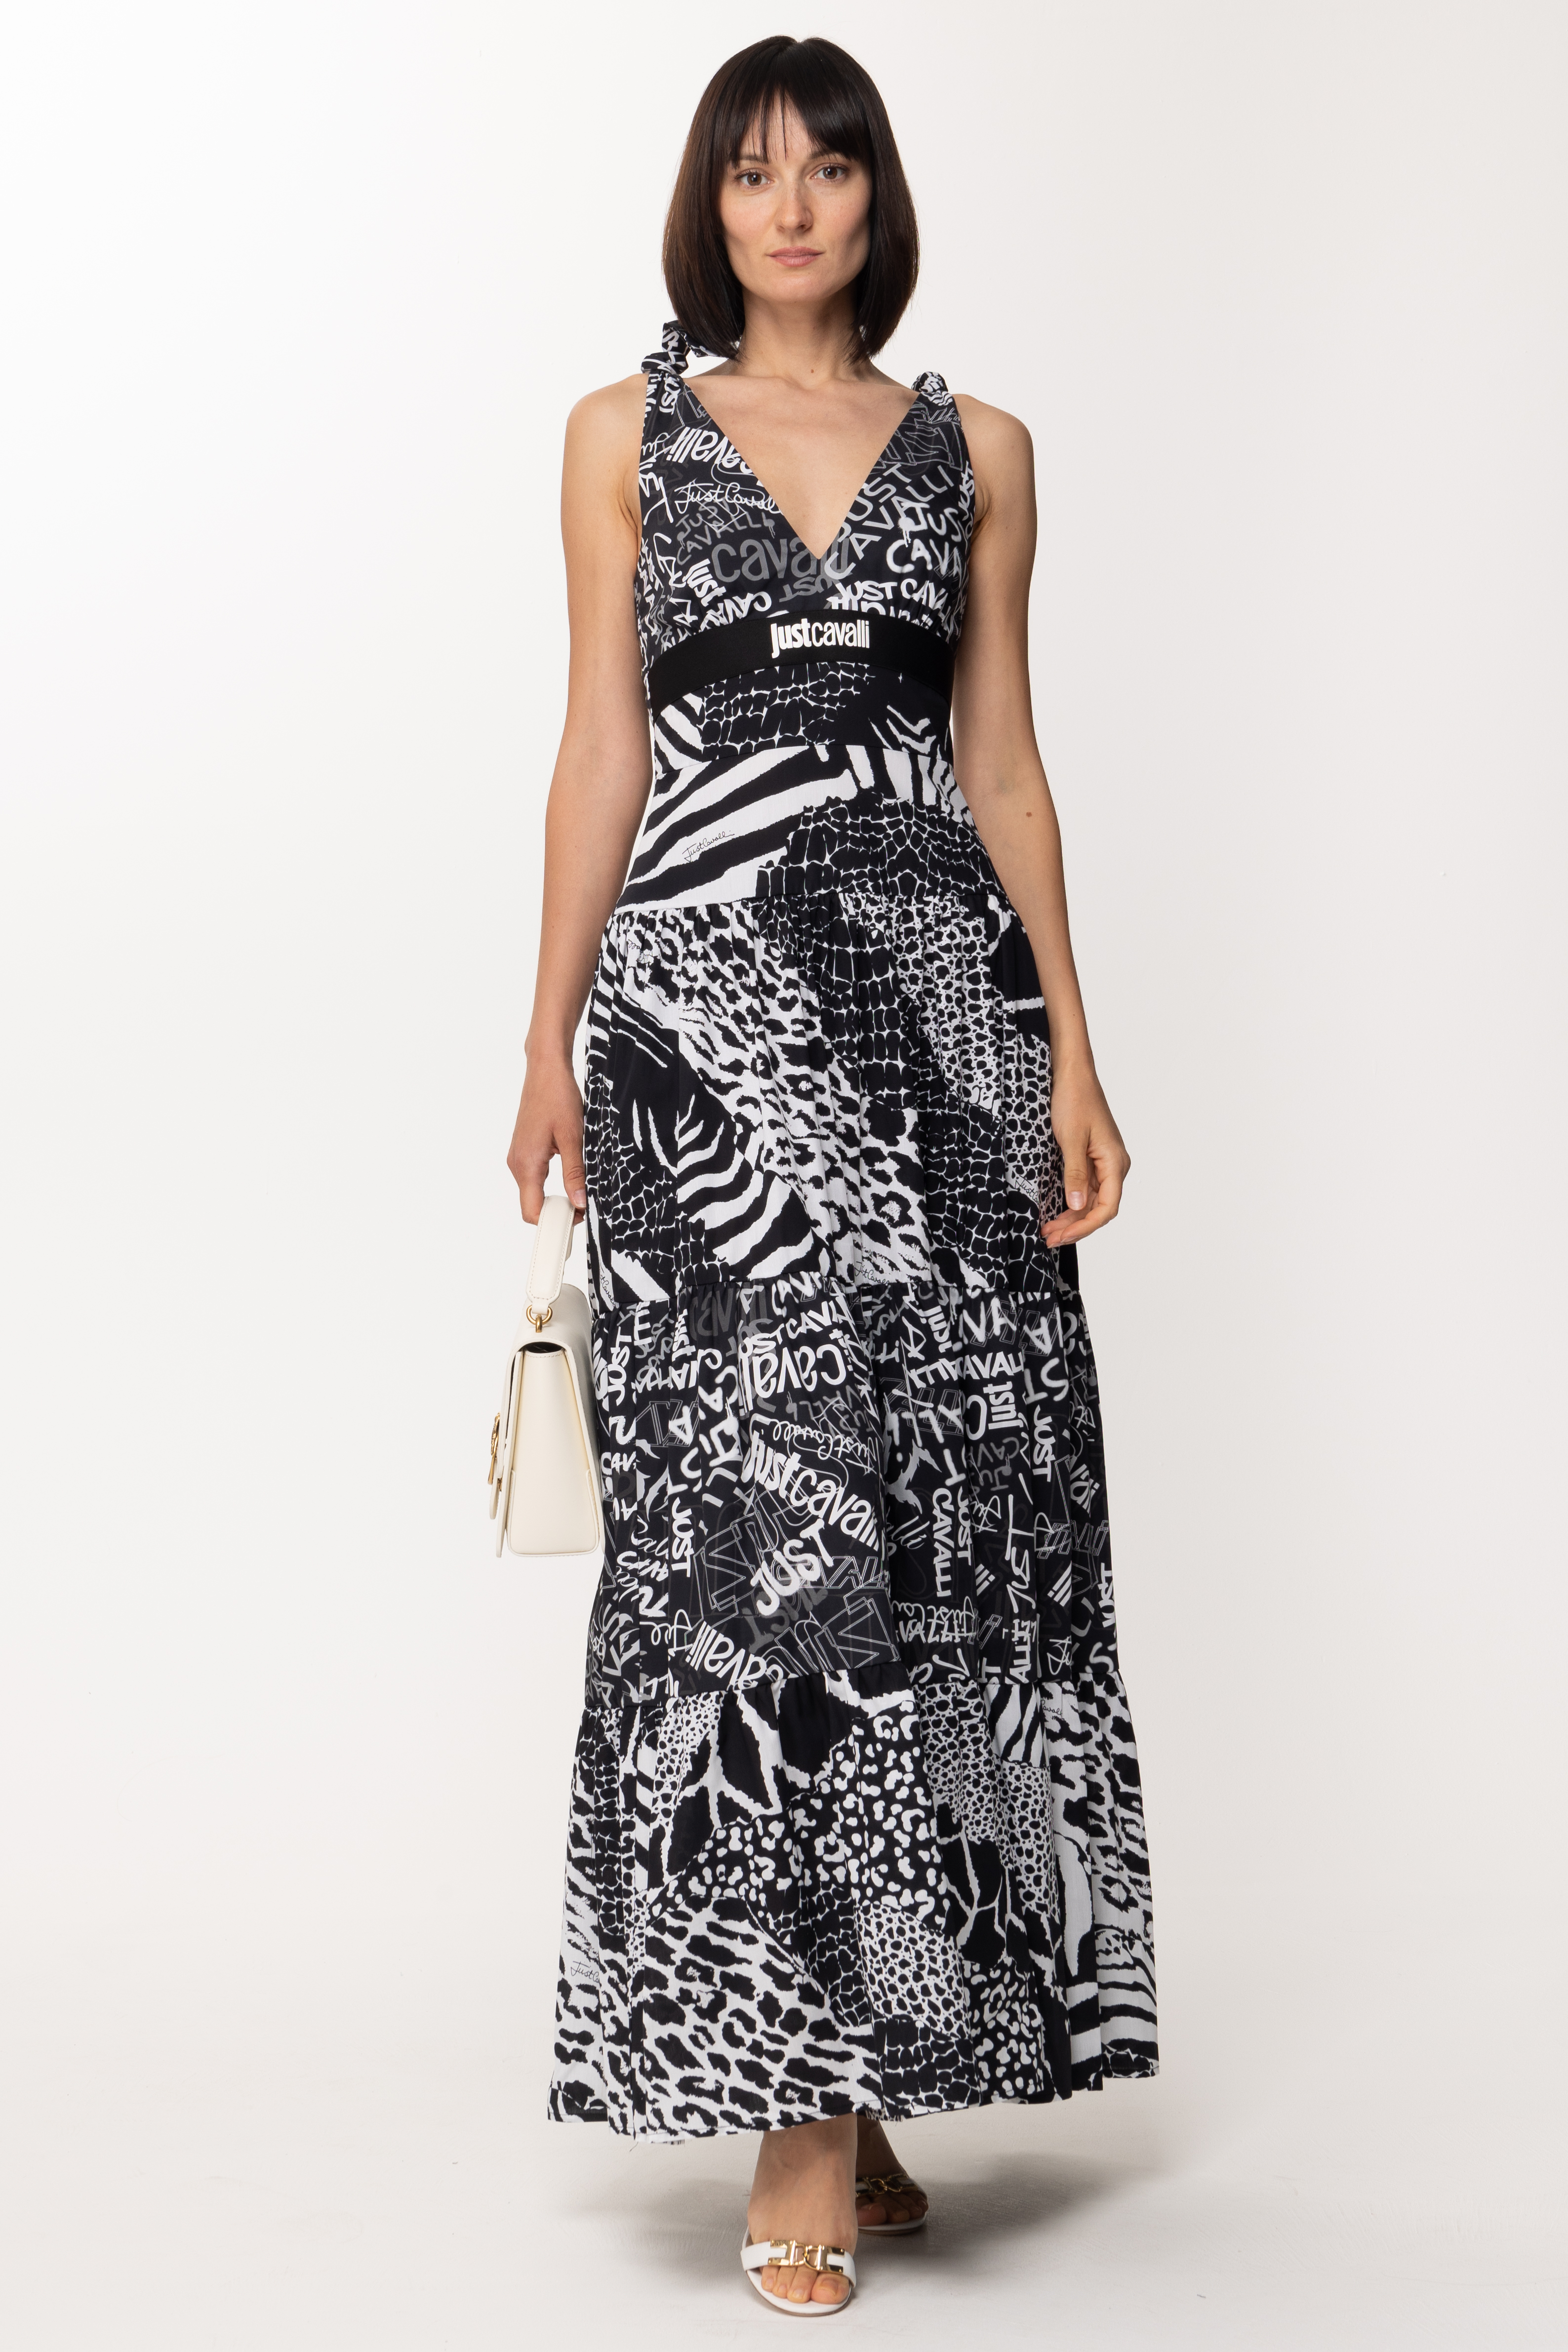 Vorschau: Just Cavalli Langes Kleid mit mehreren Mustern Black